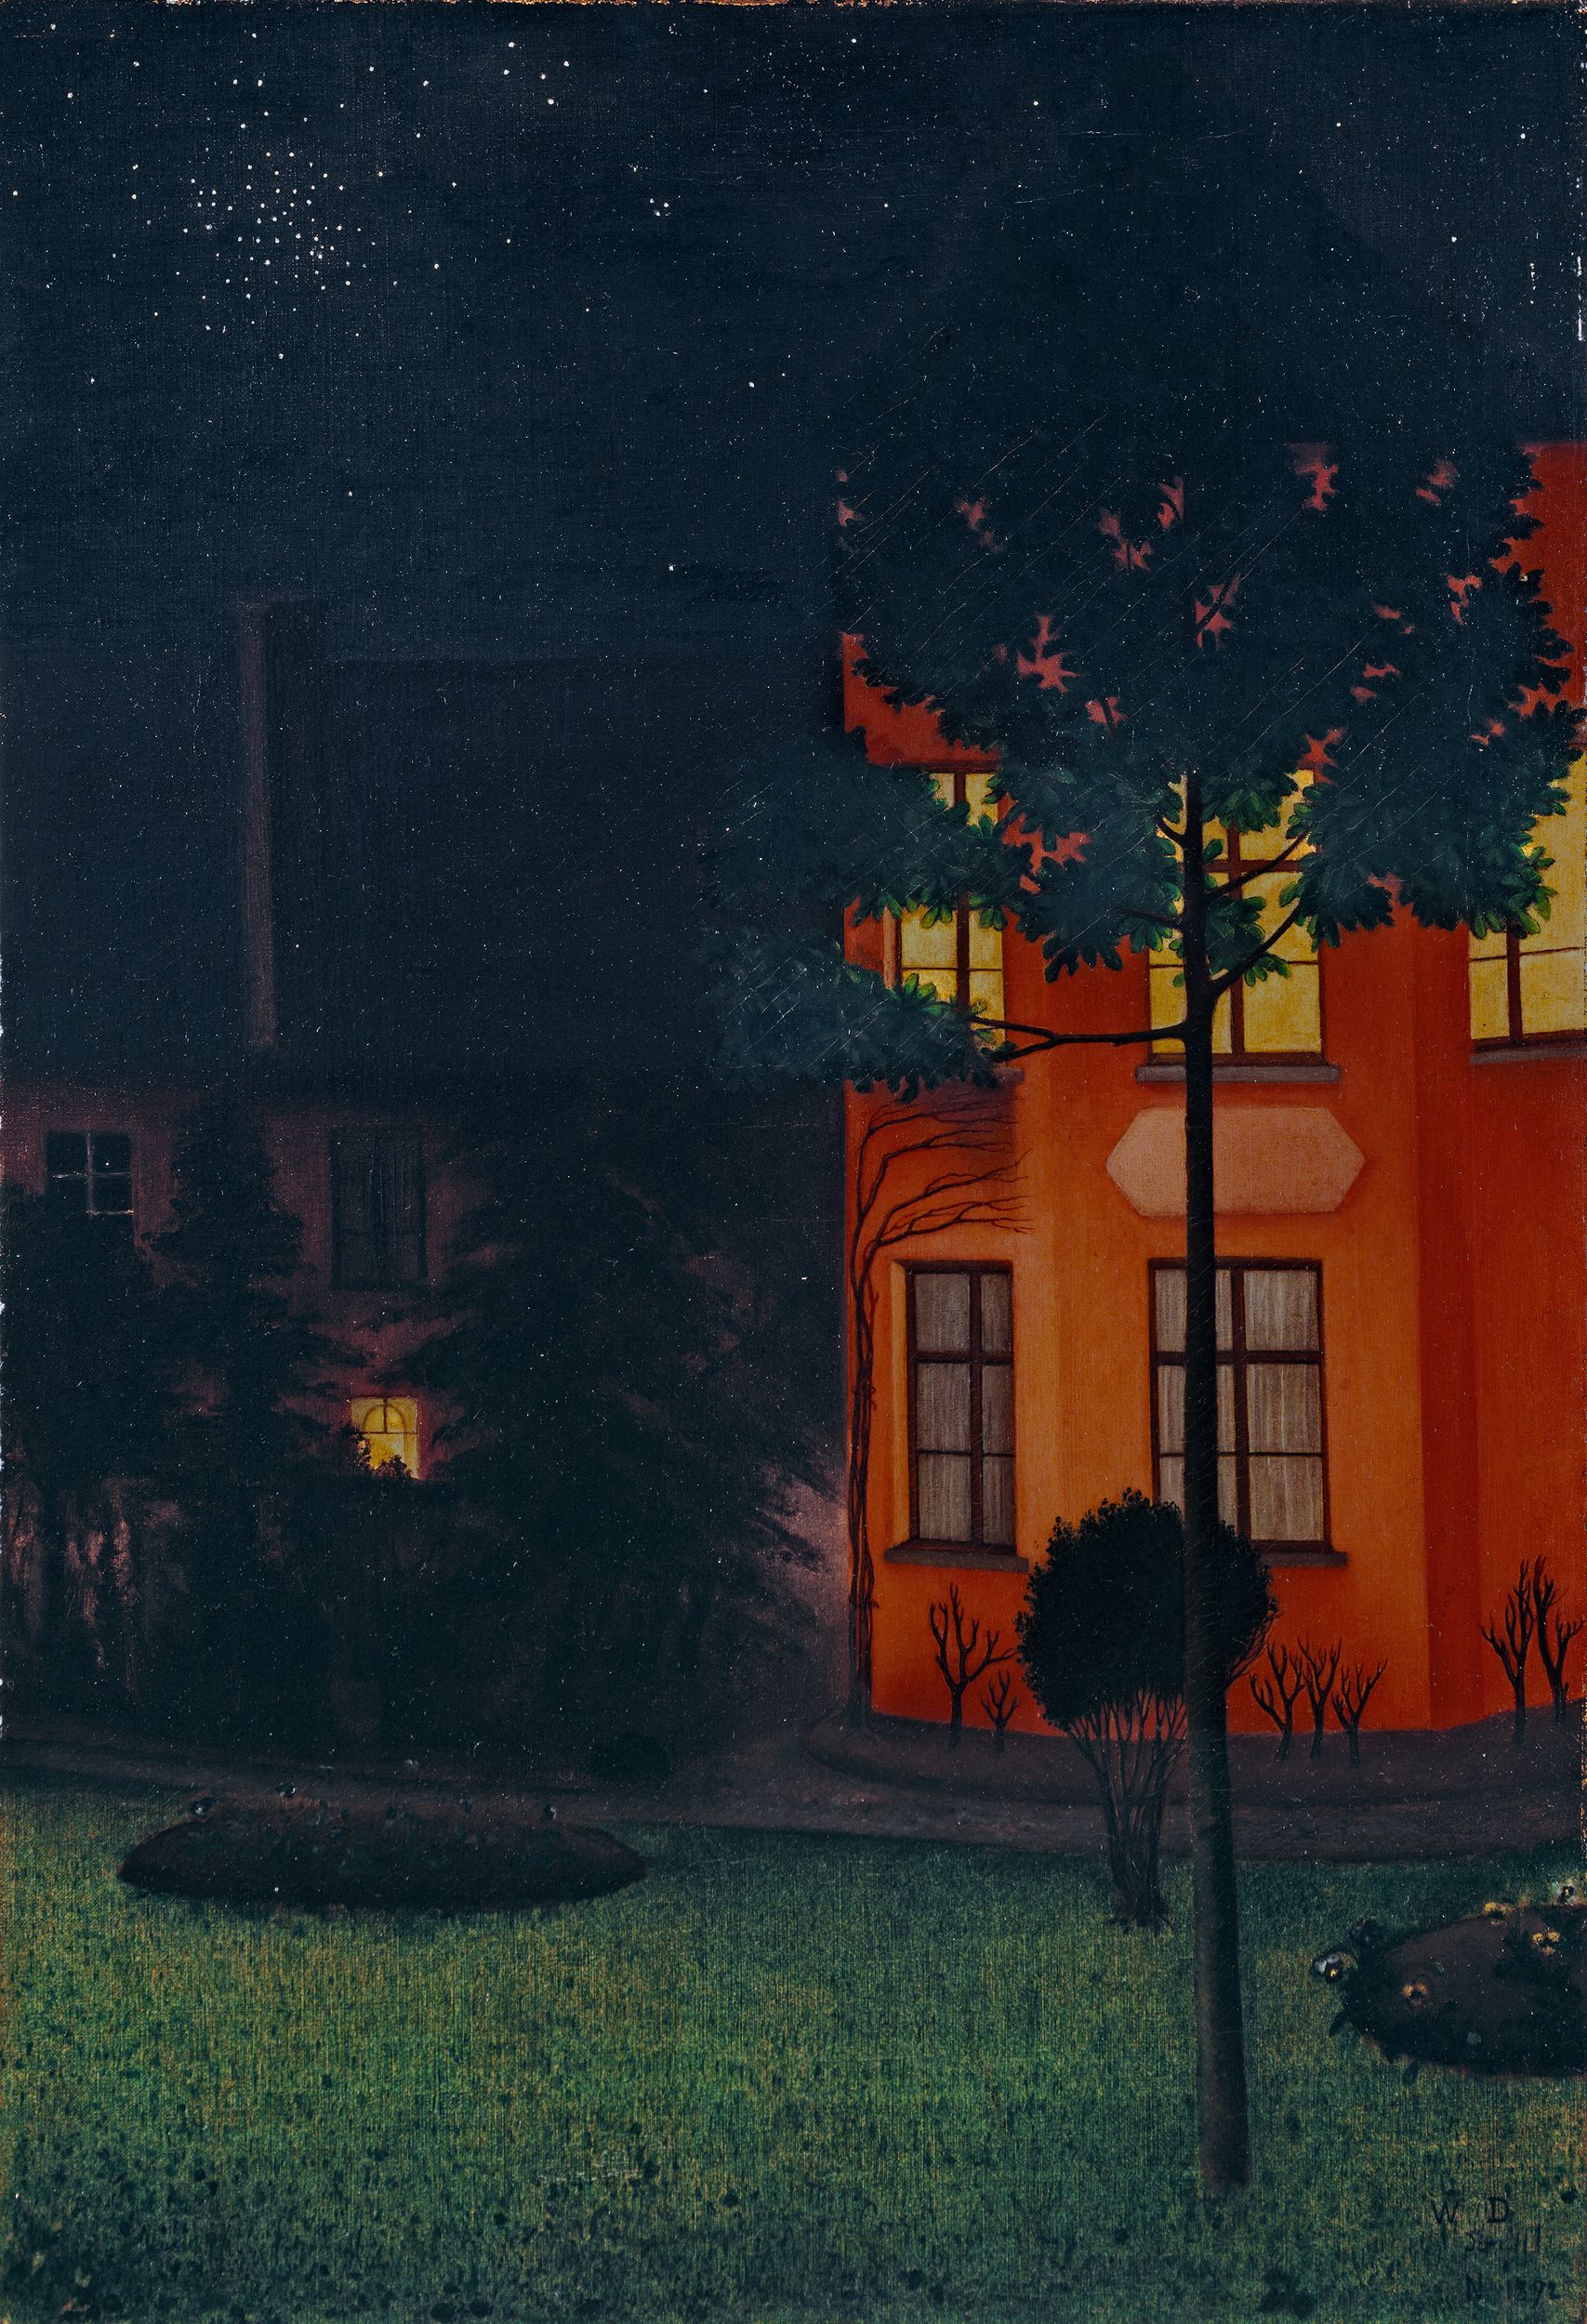 盲屋 by 威廉 德古夫-德-努克 - 1892 - 63 x 43 厘米 库勒-穆勒博物馆